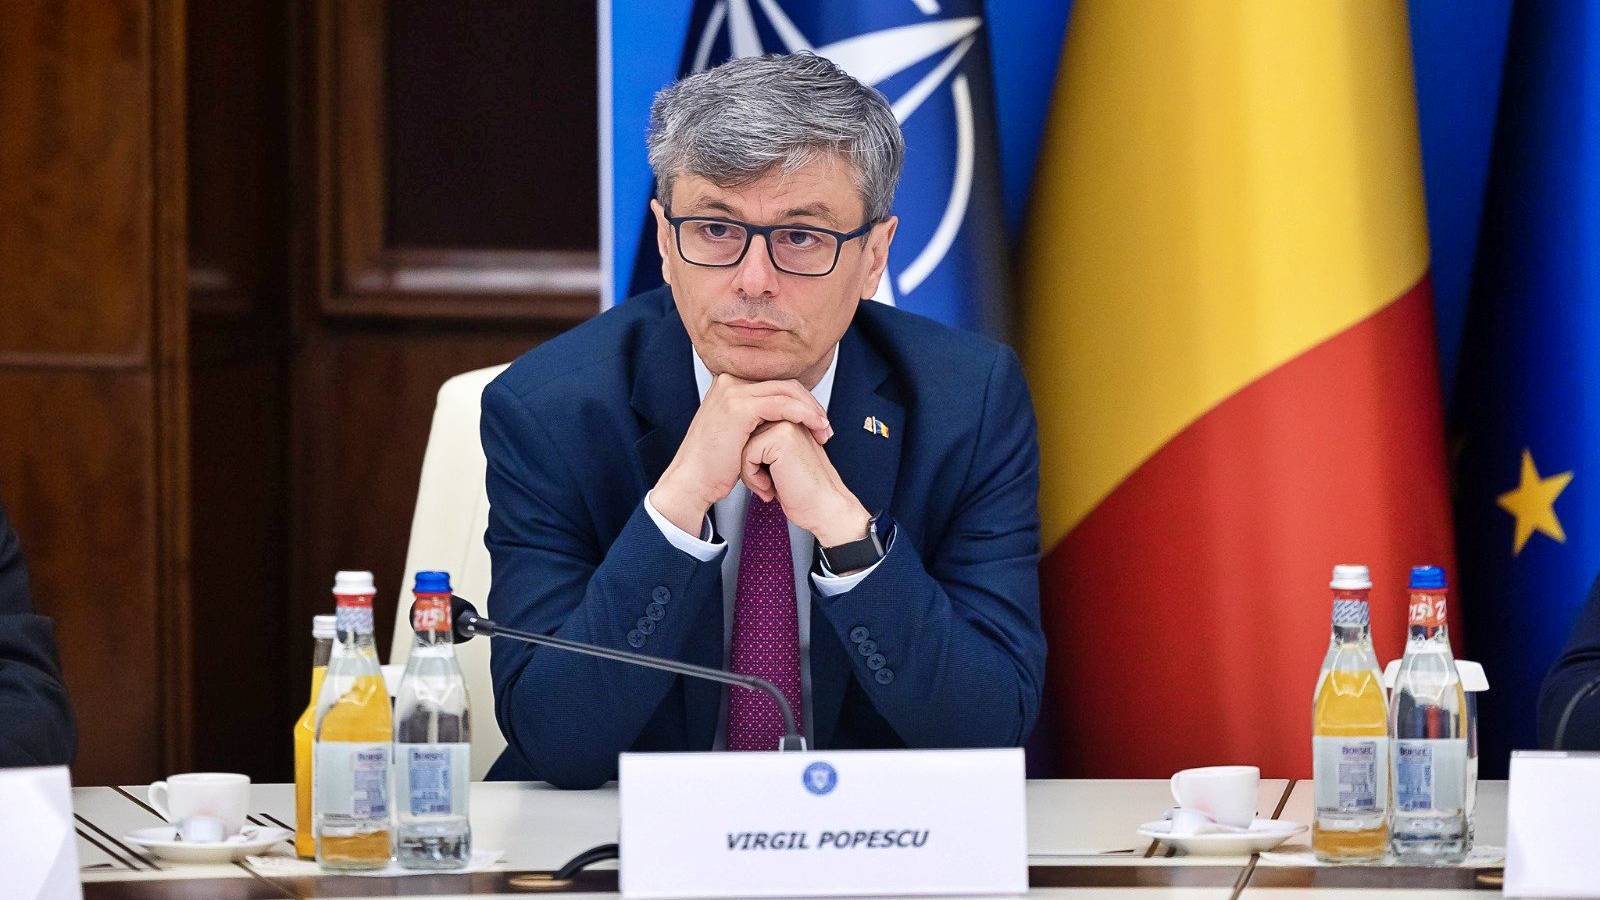 Virgil Popescu Declaratia Ultim Moment Importante Decizii Strategice Romania